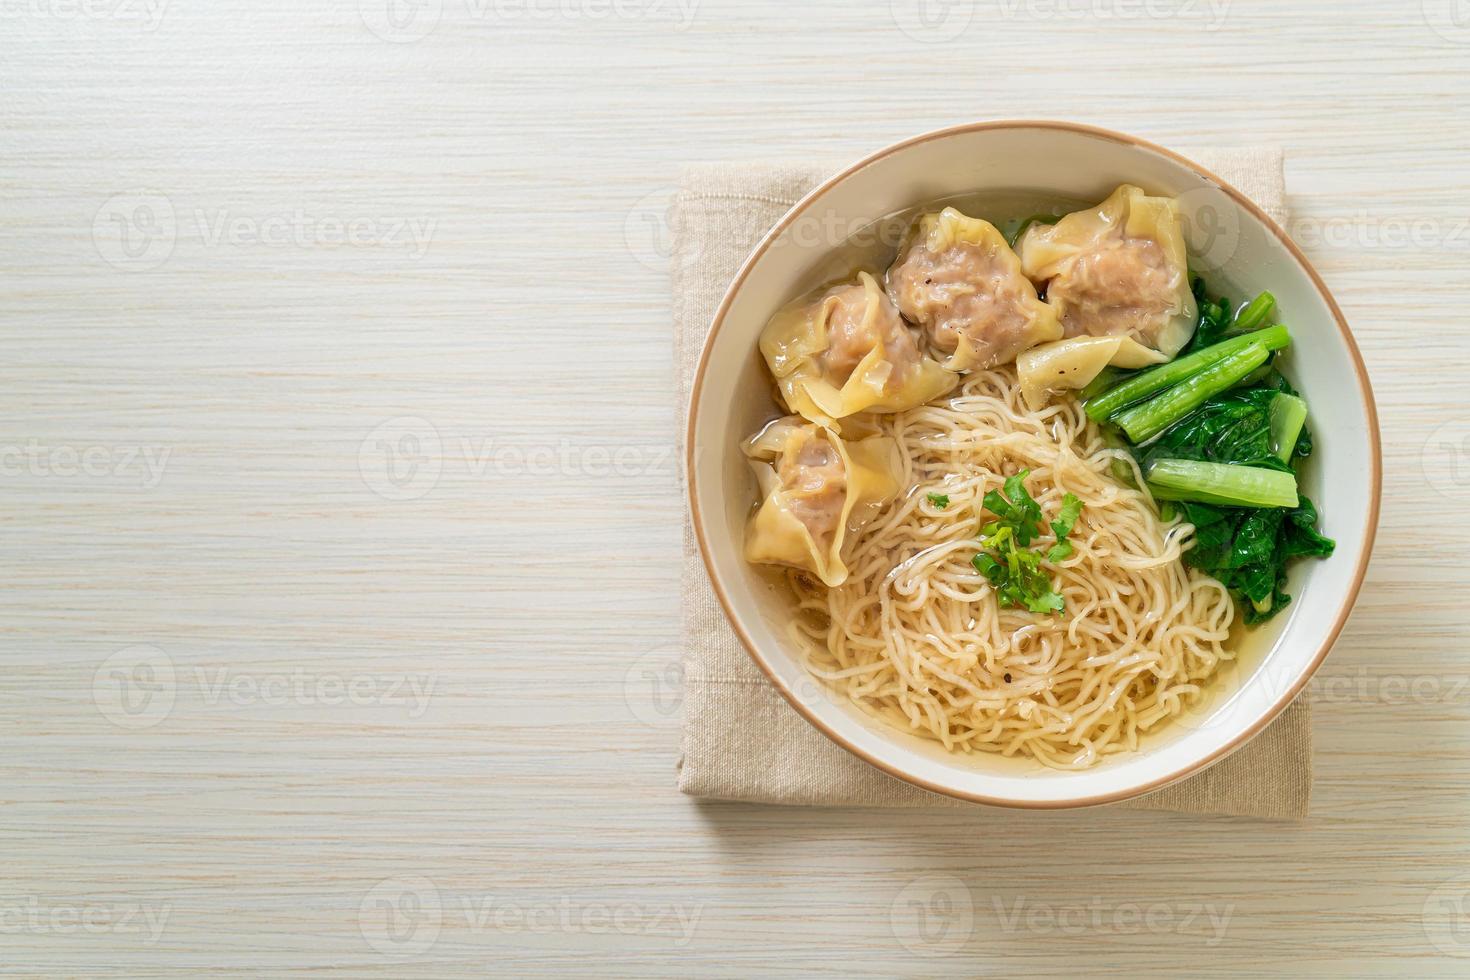 nouilles aux œufs avec soupe wonton au porc ou soupe de boulettes de porc et légumes - style cuisine asiatique photo